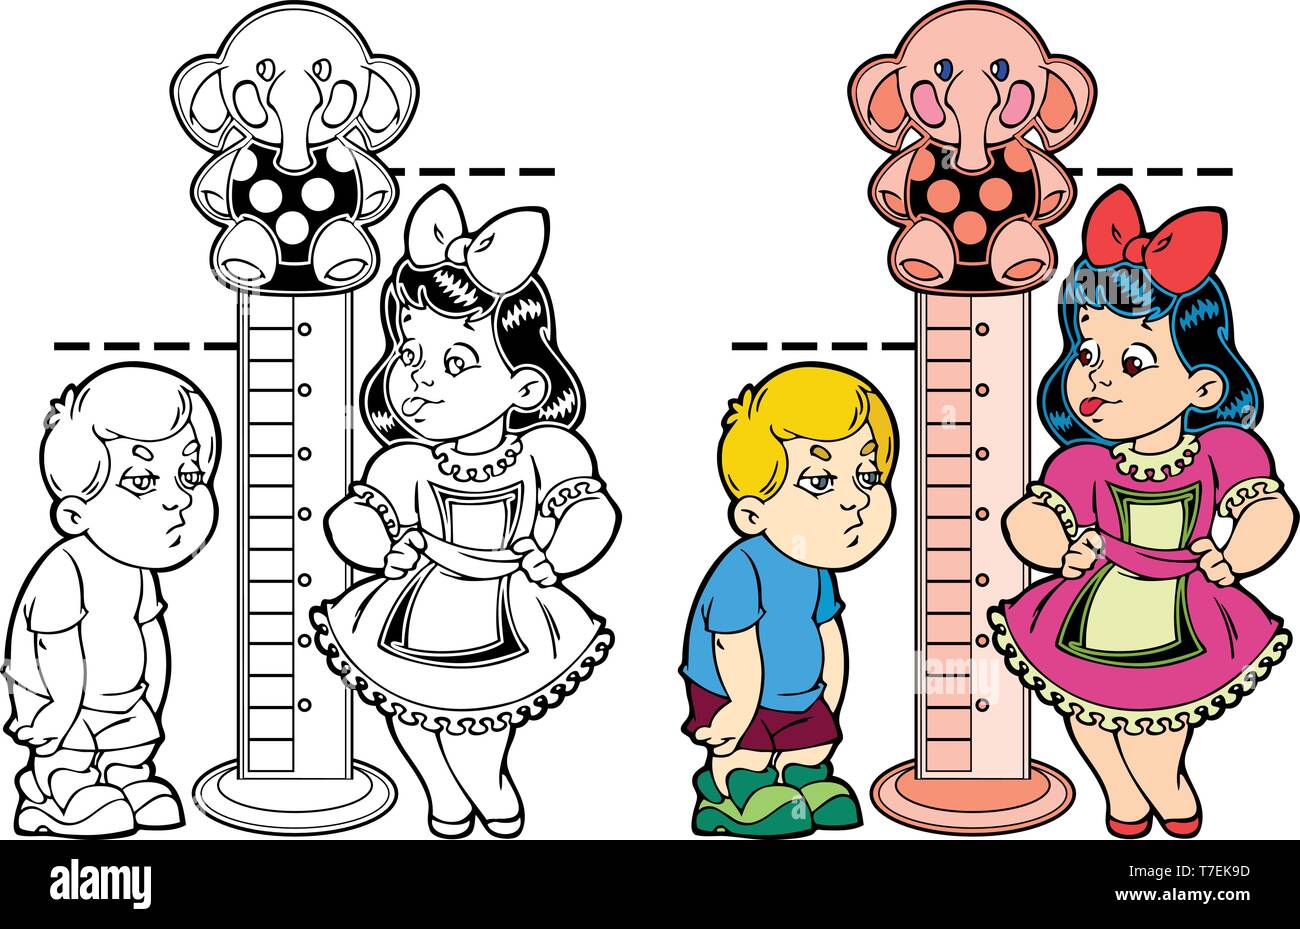 Abbildung zeigt cartoon Junge und Mädchen, Messung von Wachstum. Das Bild zeigt die Entwicklung der Kinder. Ist ein schwarzer Umriss für ein Malbuch. Stock Vektor